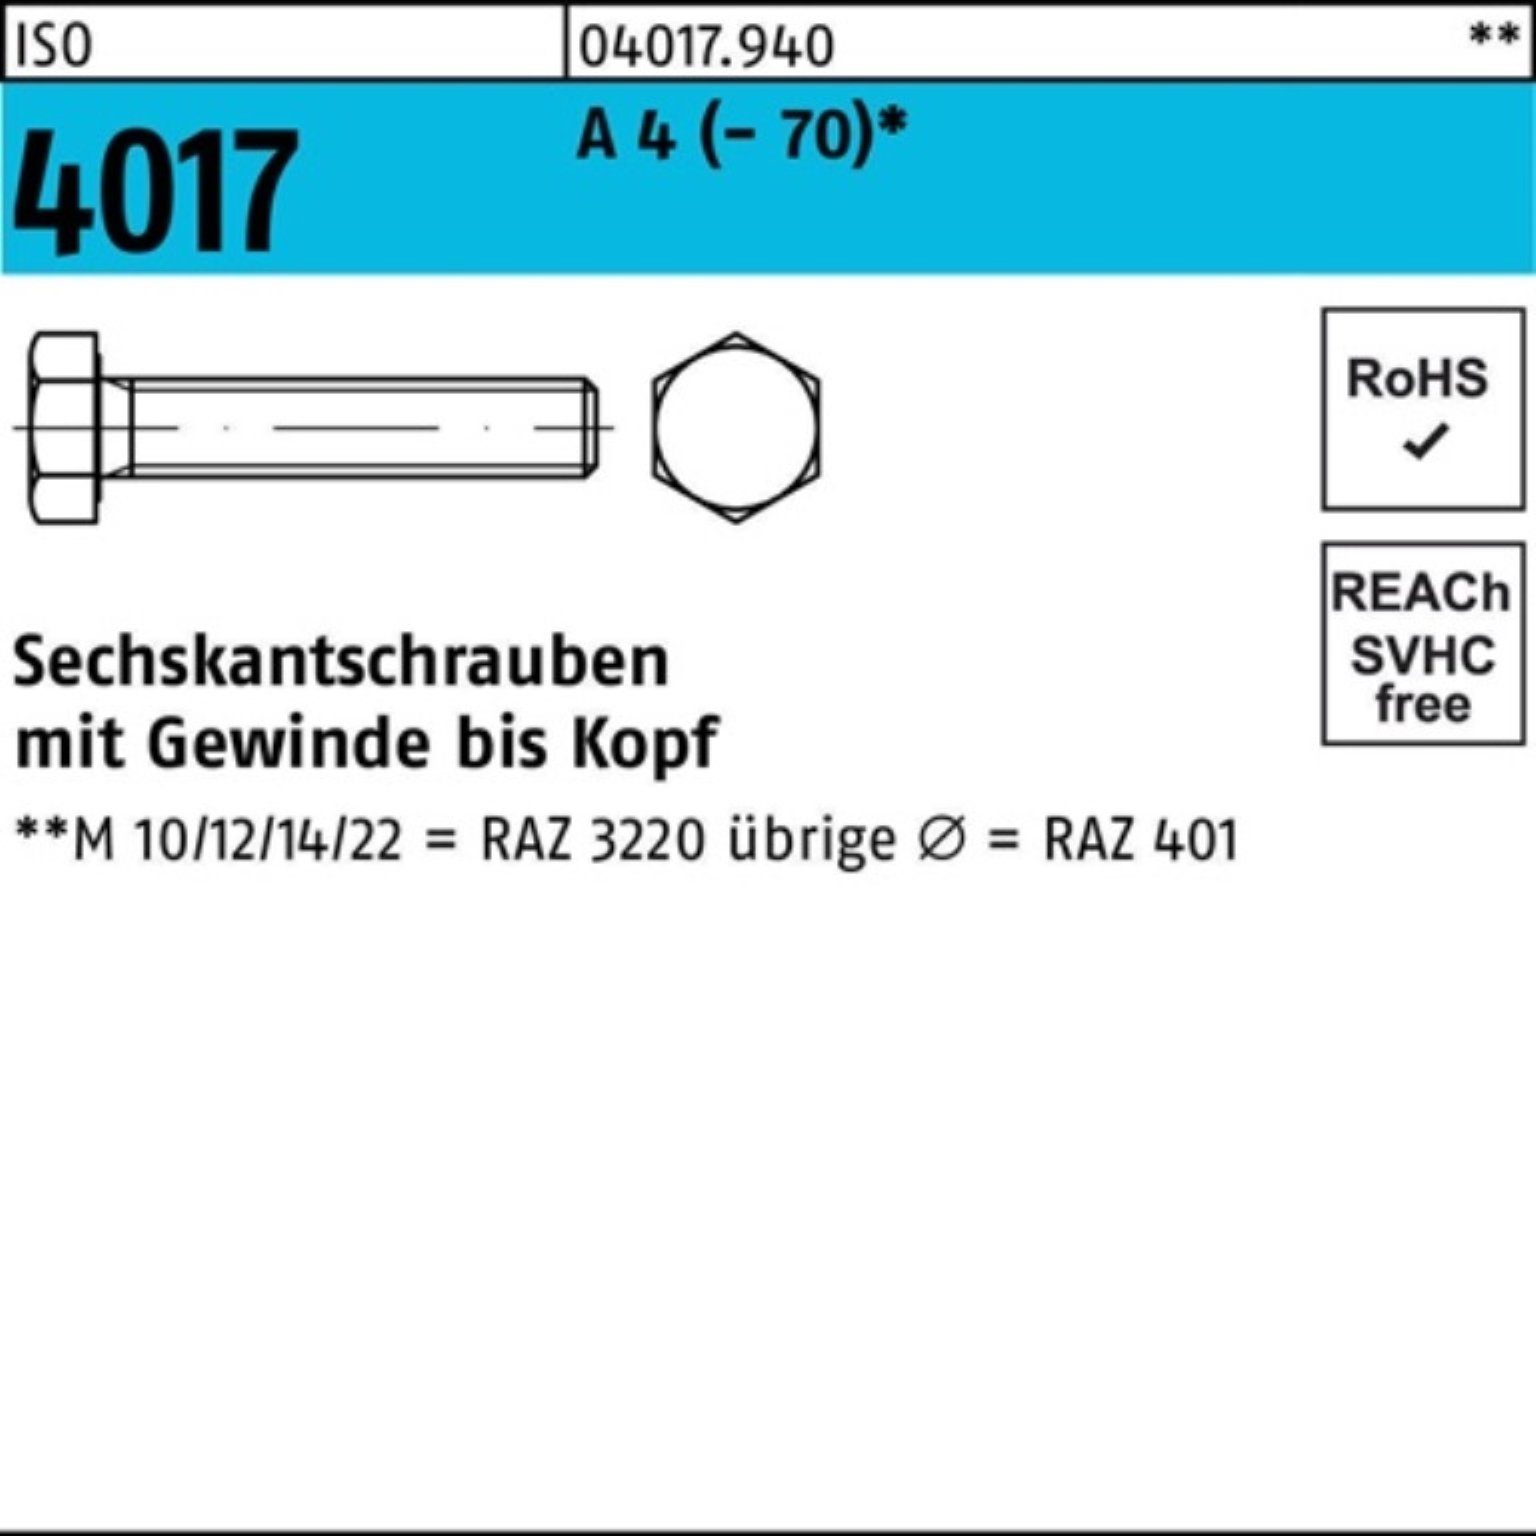 Bufab Sechskantschraube 100er Pack Sechskantschraube ISO 4017 VG M10x 160 A 4 (70) 1 Stück